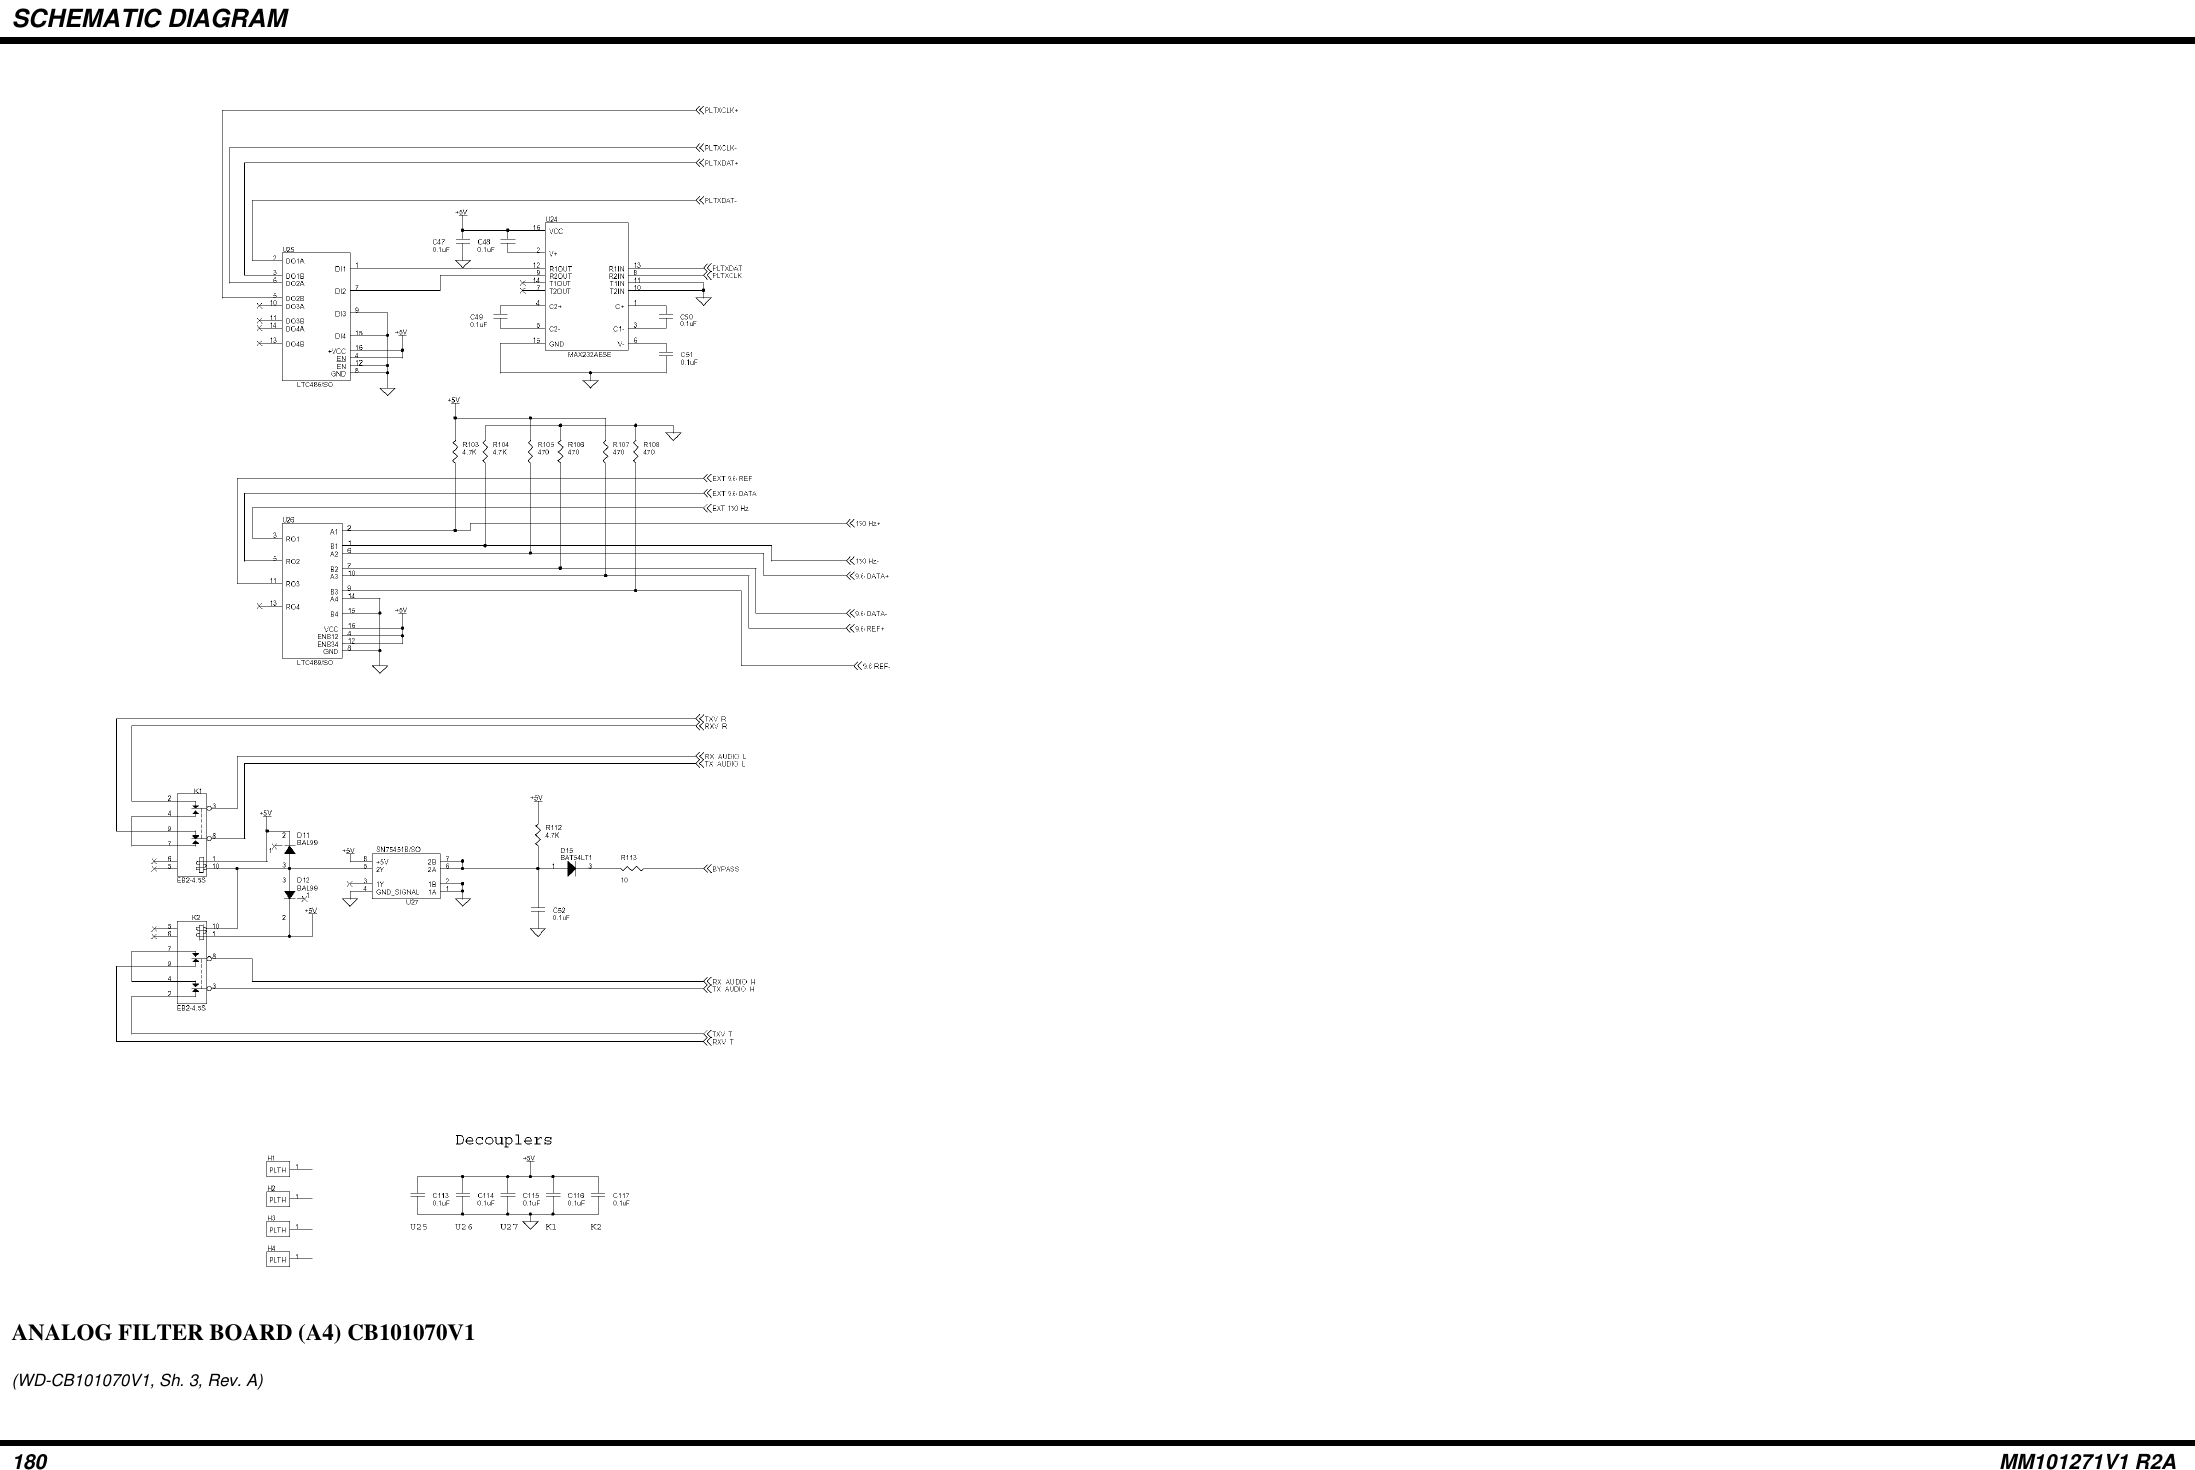 SCHEMATIC DIAGRAM180 MM101271V1 R2AANALOG FILTER BOARD (A4) CB101070V1(WD-CB101070V1, Sh. 3, Rev. A)